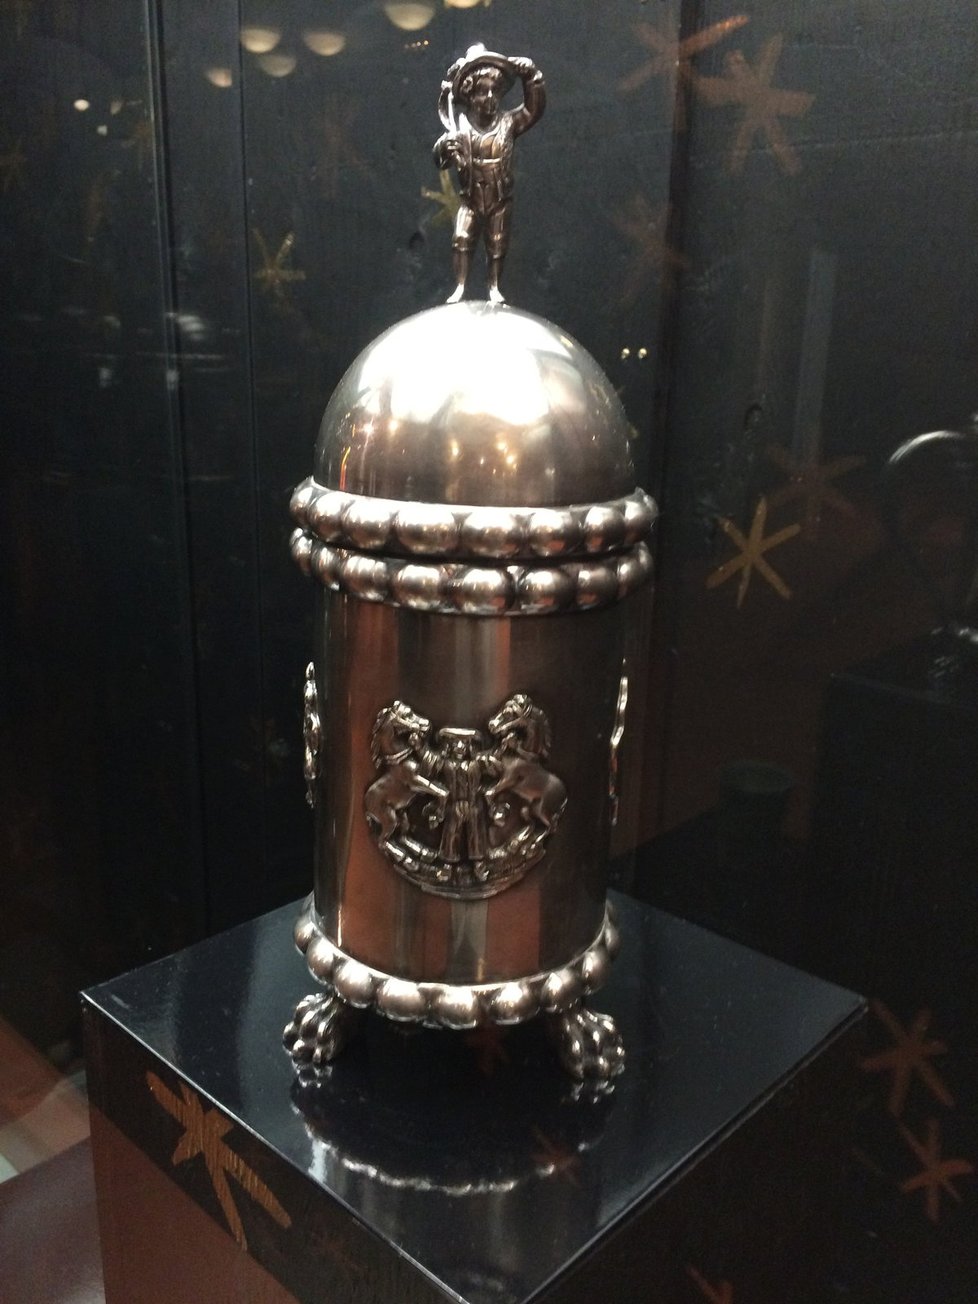 Vajdovský stříbrný pohár s výjevy ze života Romů, přelom 18. a 19.století.